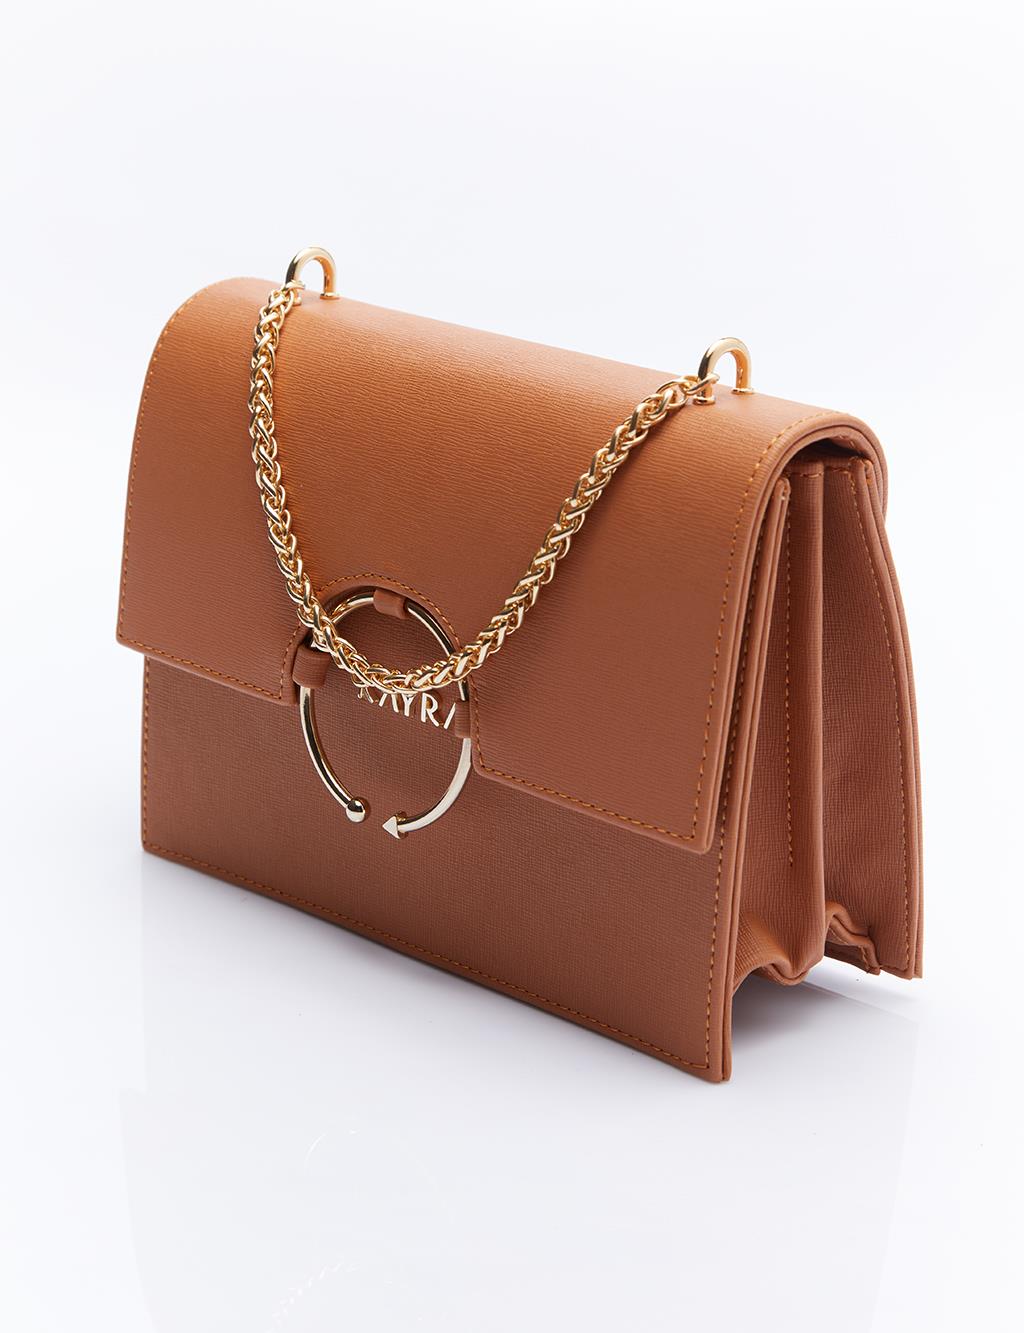 Дизайнерская сумка с ручкой-цепочкой, коричневая Kayra